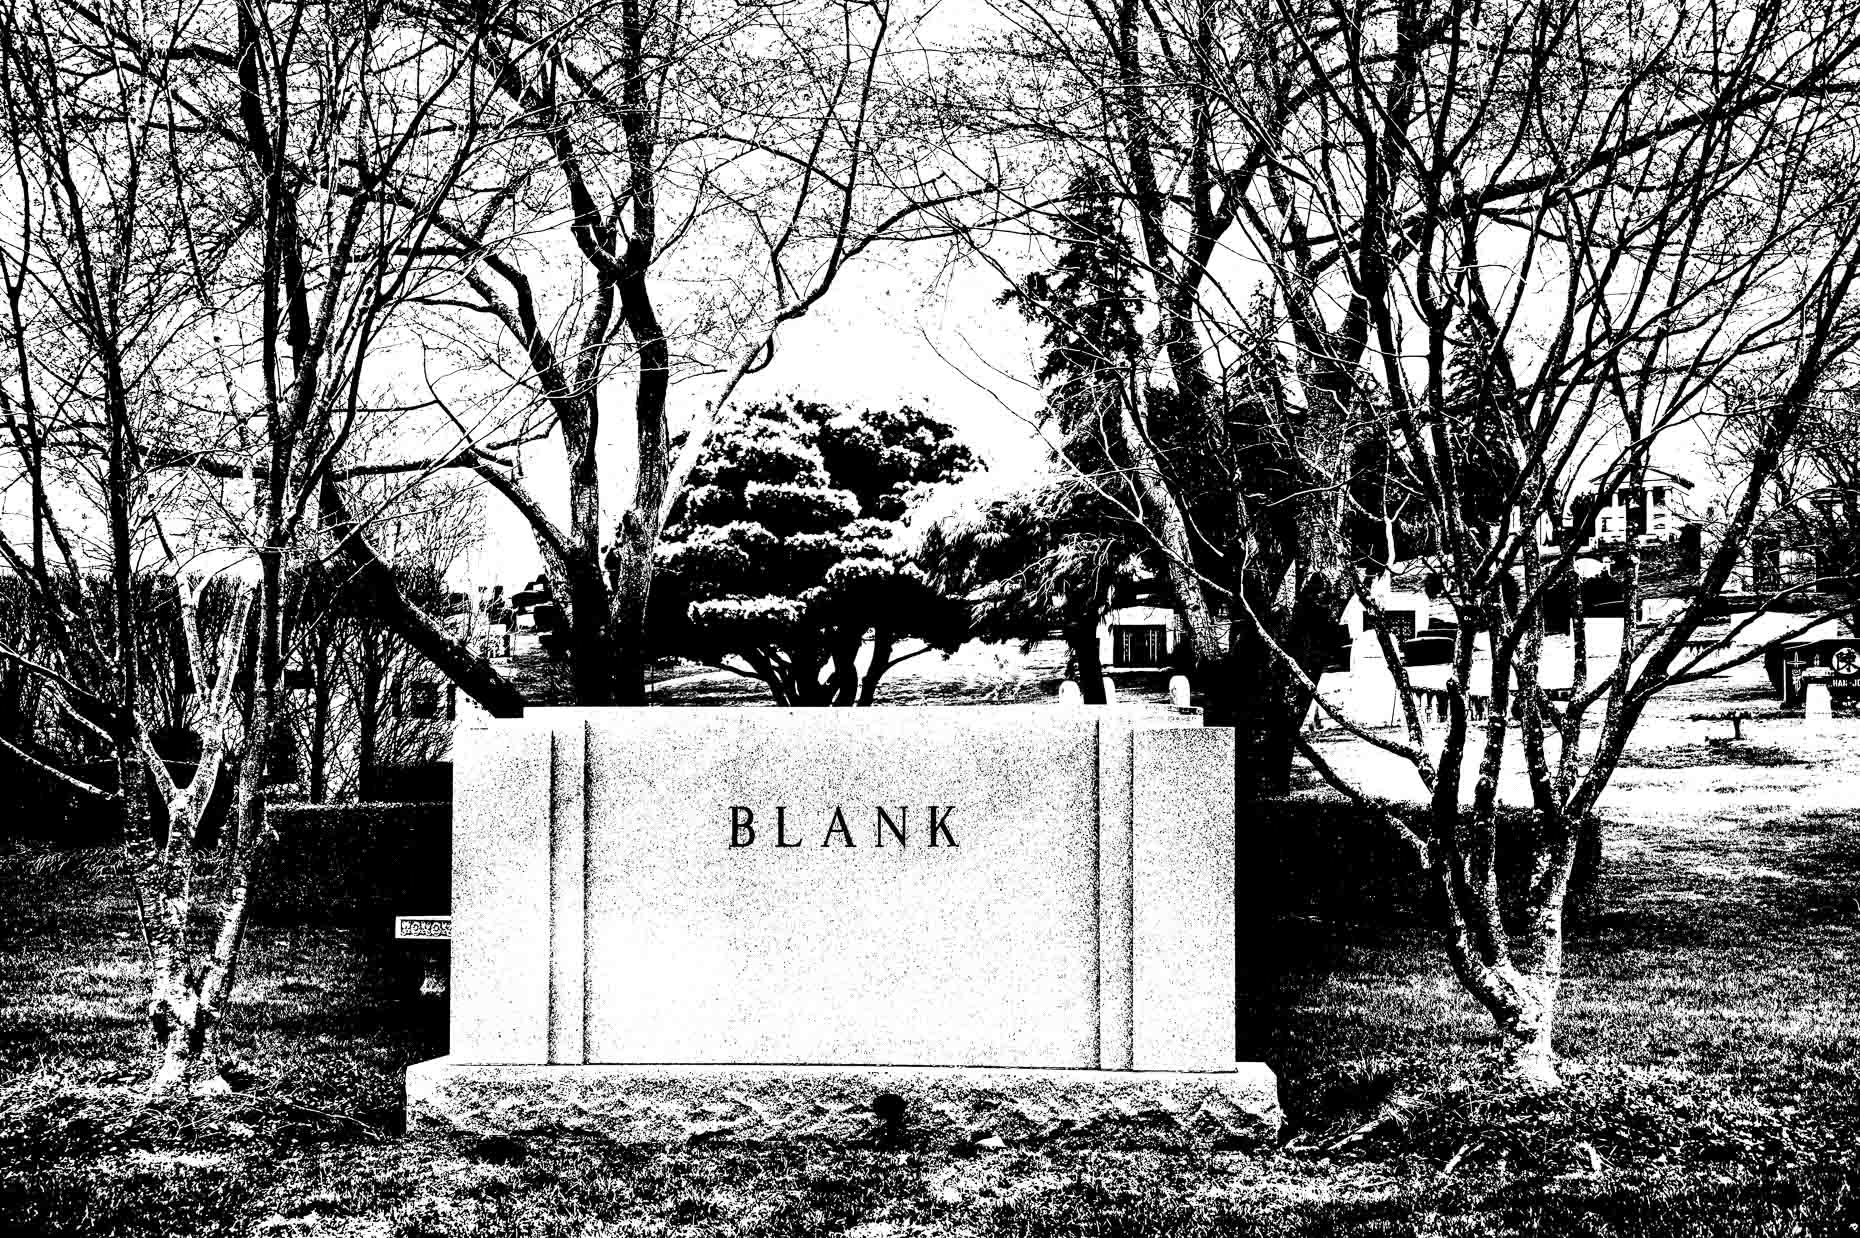 Blank, NY